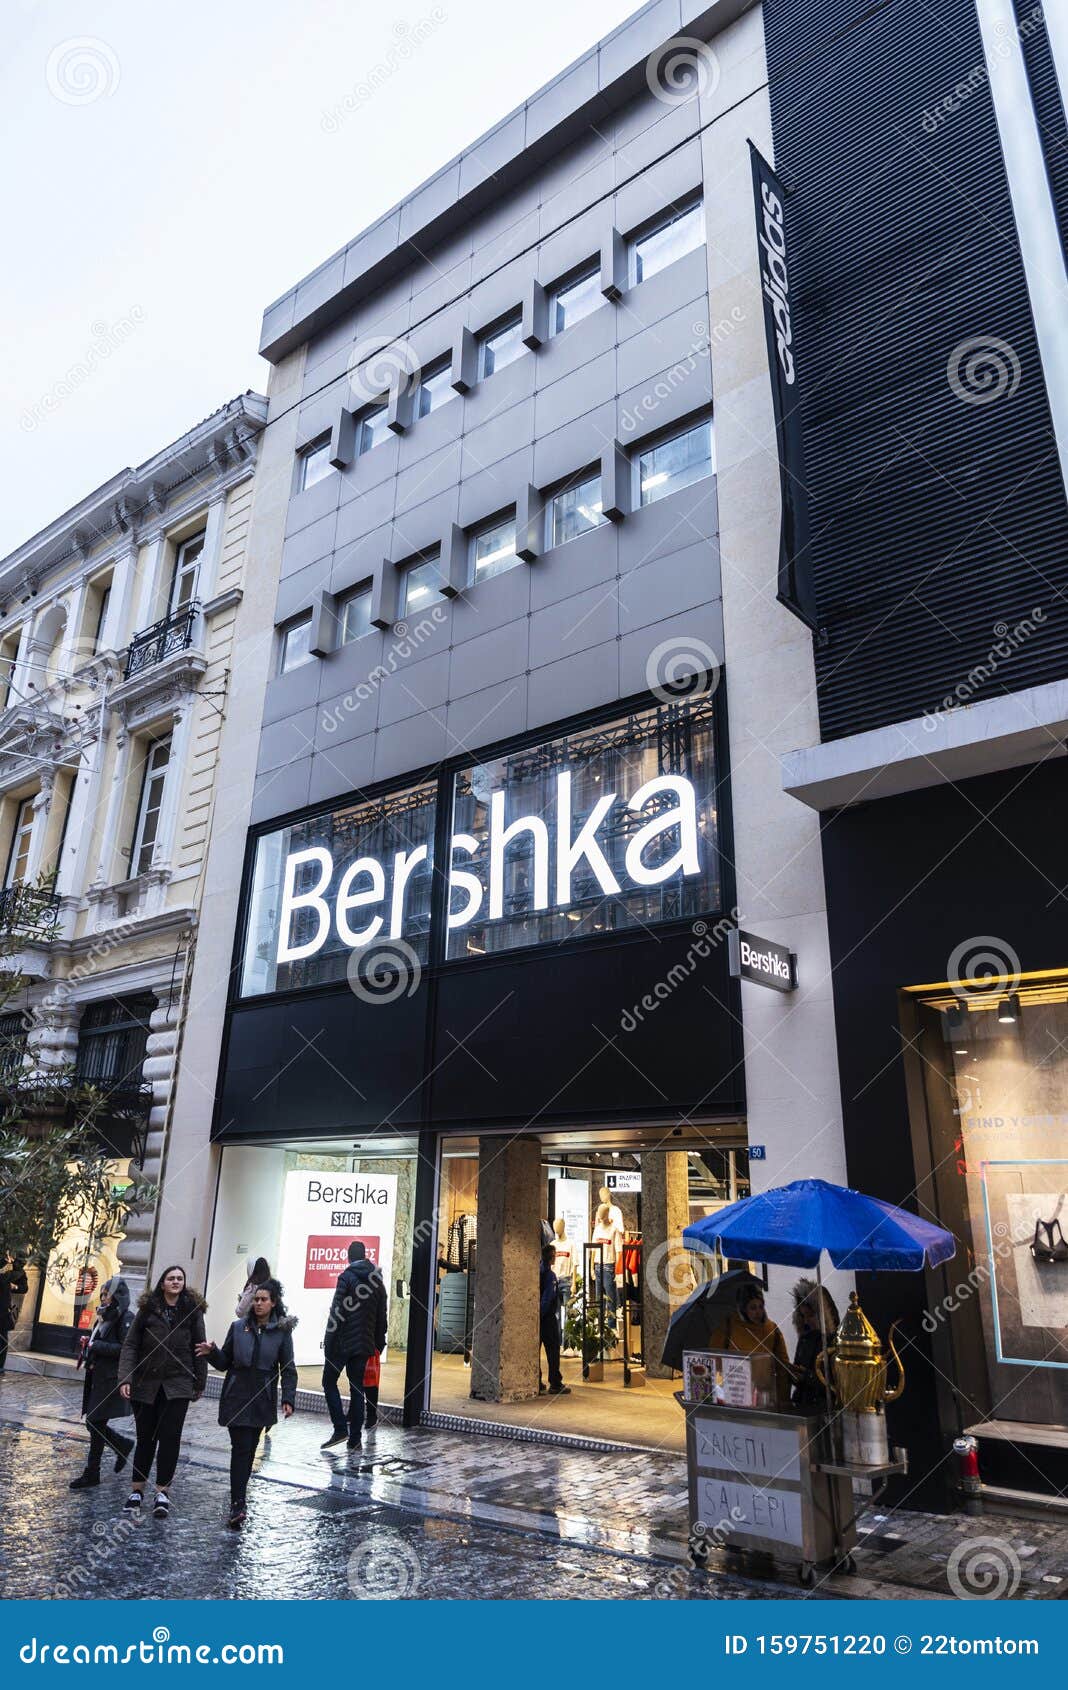 temperament Democratie Waarschijnlijk Bershka Store at Night in Athens, Greece Editorial Image - Image of design,  retail: 159751220